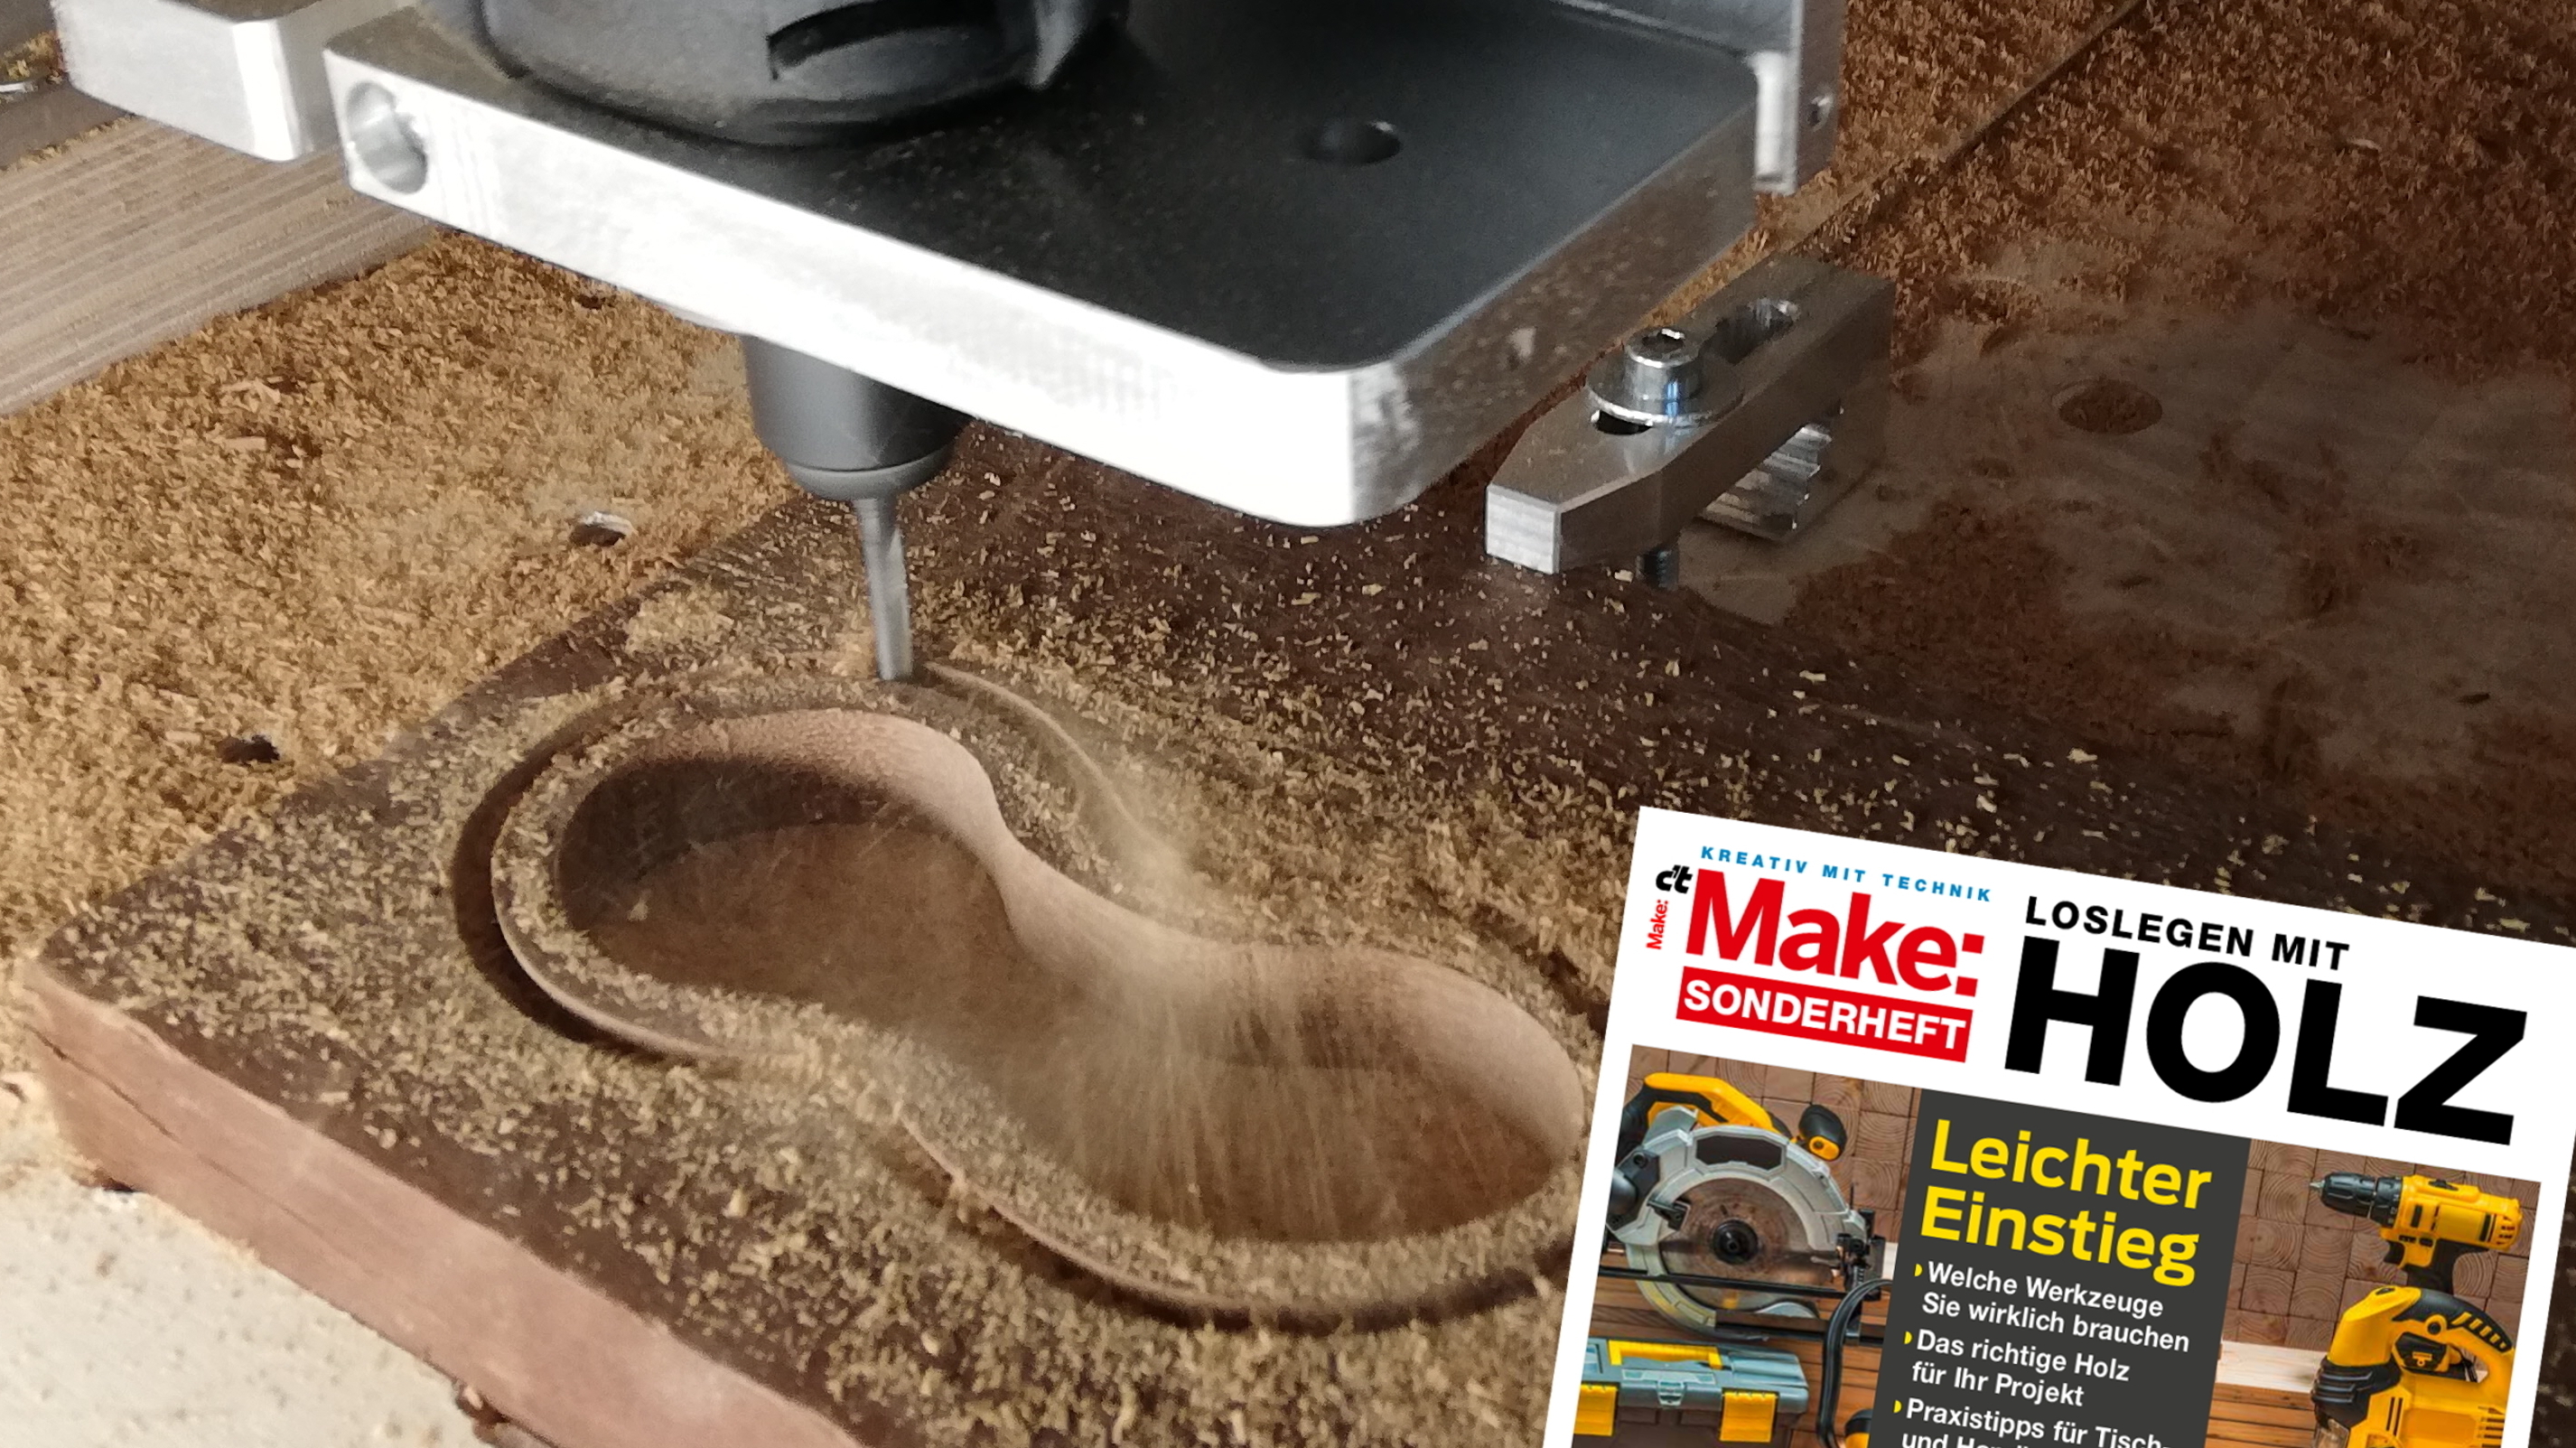 Make Sonderheft "Loslegen mit Holz": Einstieg in CNC-Fräse und Lasercutter  | heise online